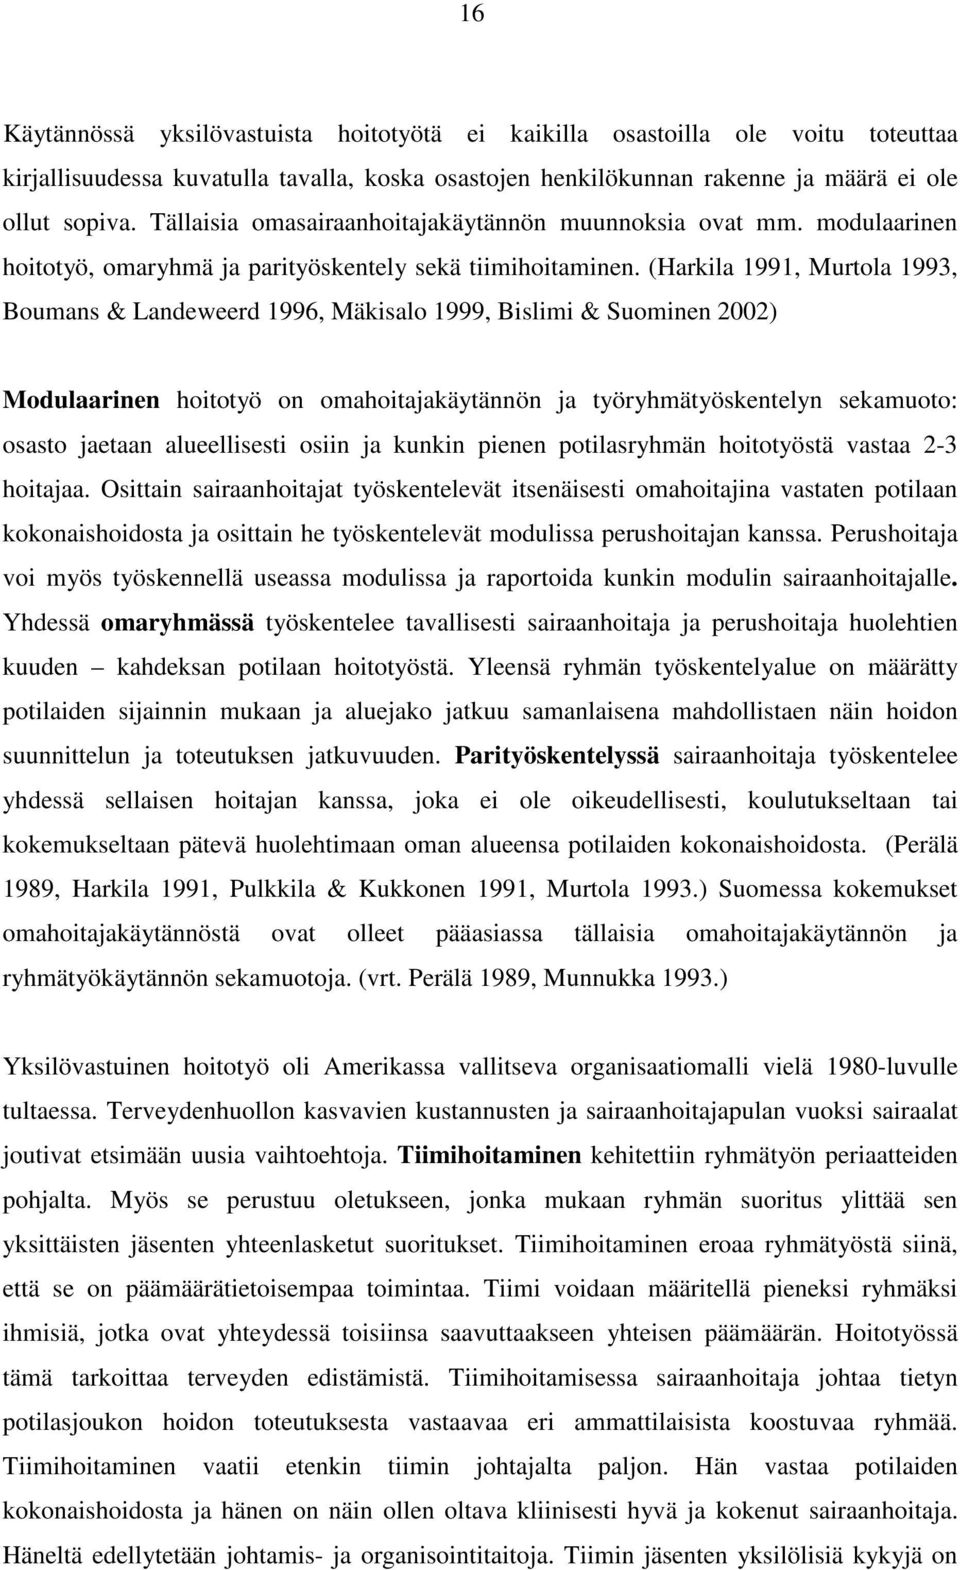 (Harkila 1991, Murtola 1993, Boumans & Landeweerd 1996, Mäkisalo 1999, Bislimi & Suominen 2002) Modulaarinen hoitotyö on omahoitajakäytännön ja työryhmätyöskentelyn sekamuoto: osasto jaetaan